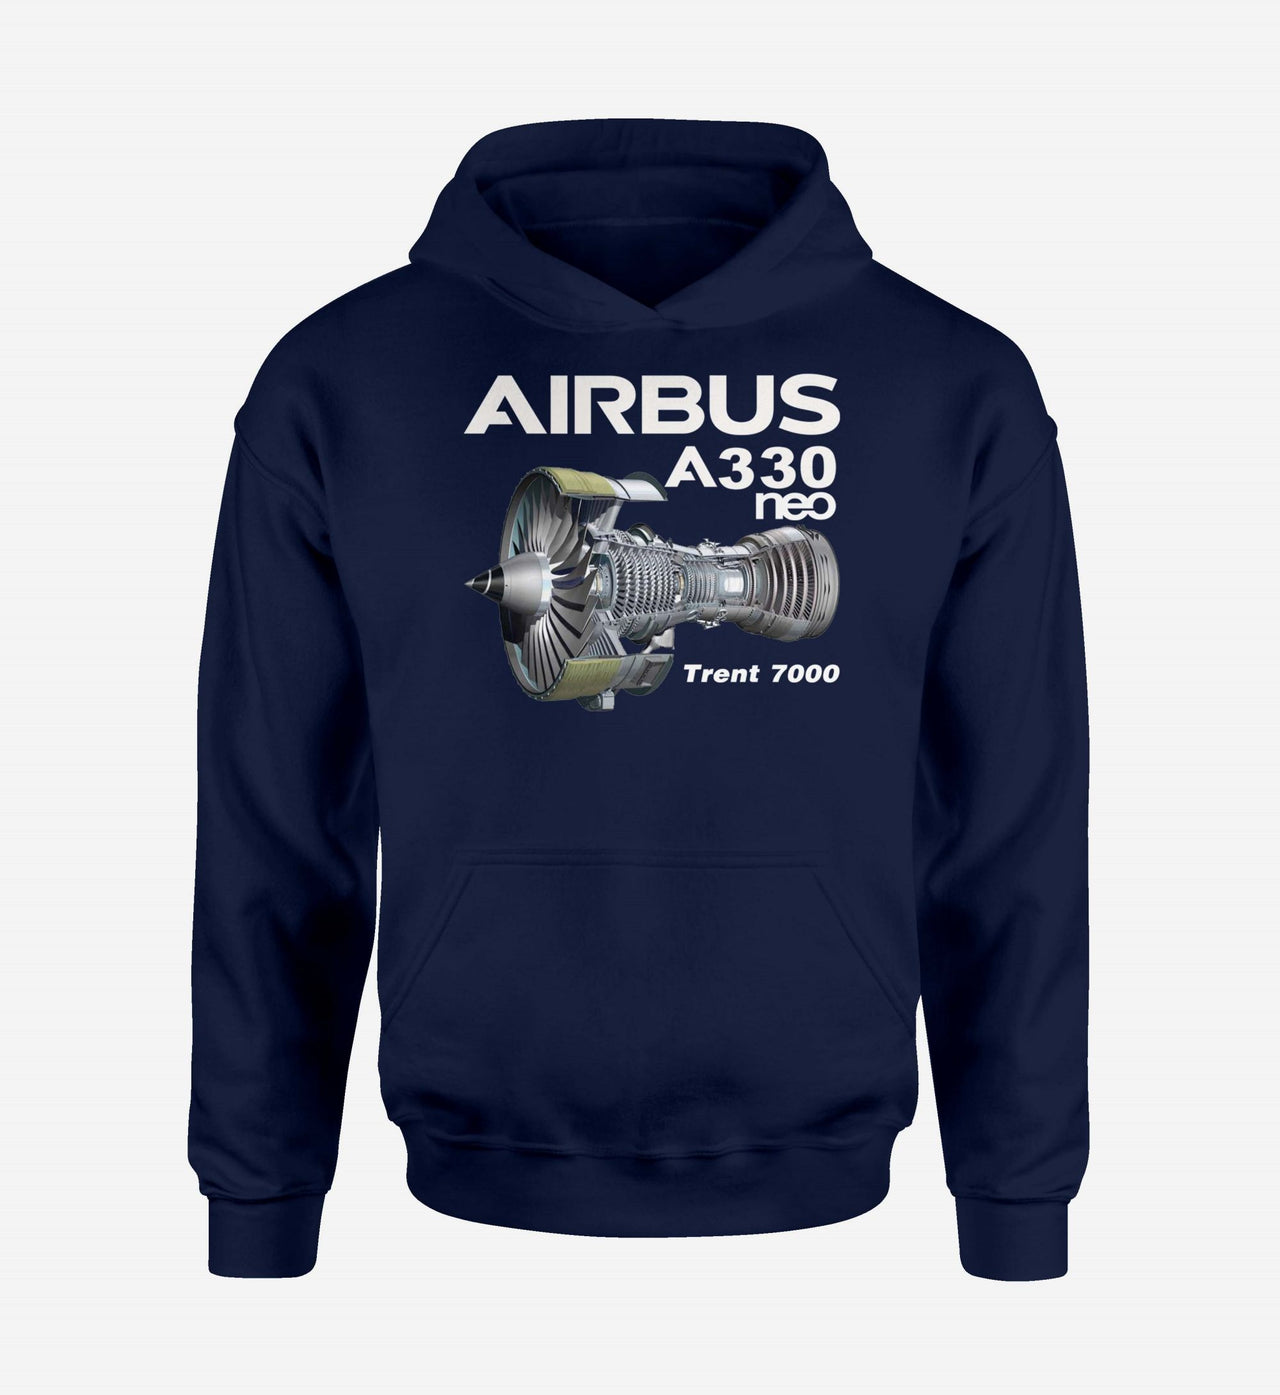 Airbus A330neo & Trent 7000 Designed Hoodies